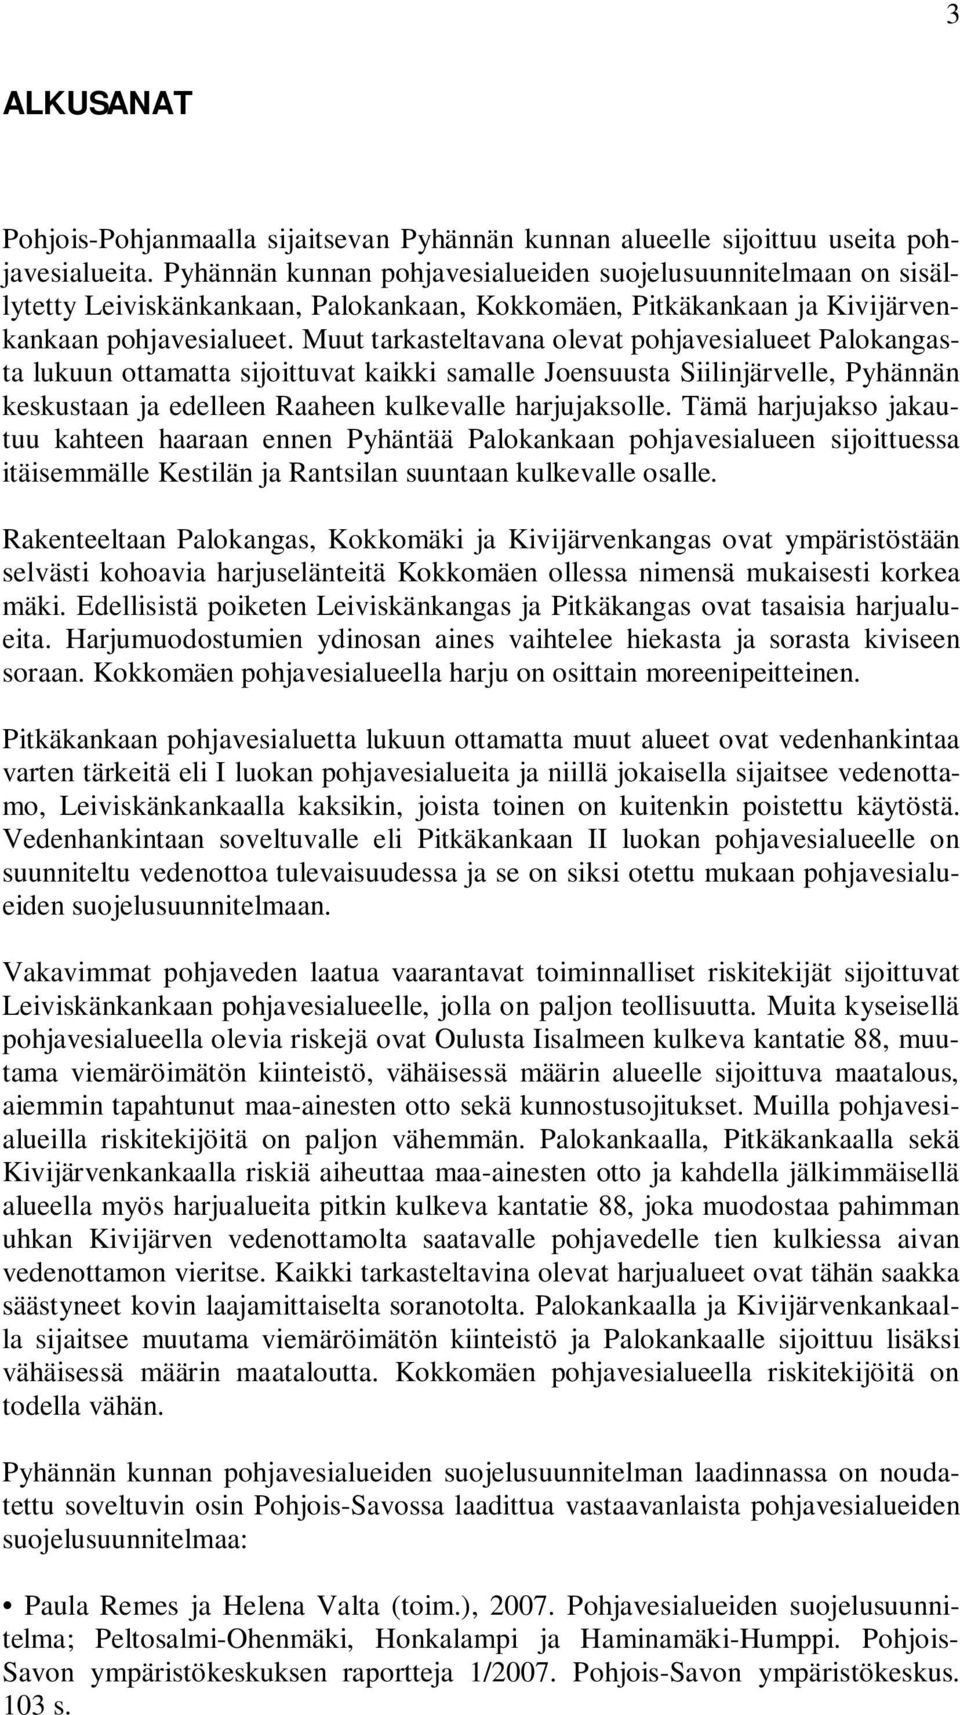 Muut tarkasteltavana olevat pohjavesialueet Palokangasta lukuun ottamatta sijoittuvat kaikki samalle Joensuusta Siilinjärvelle, Pyhännän keskustaan ja edelleen Raaheen kulkevalle harjujaksolle.